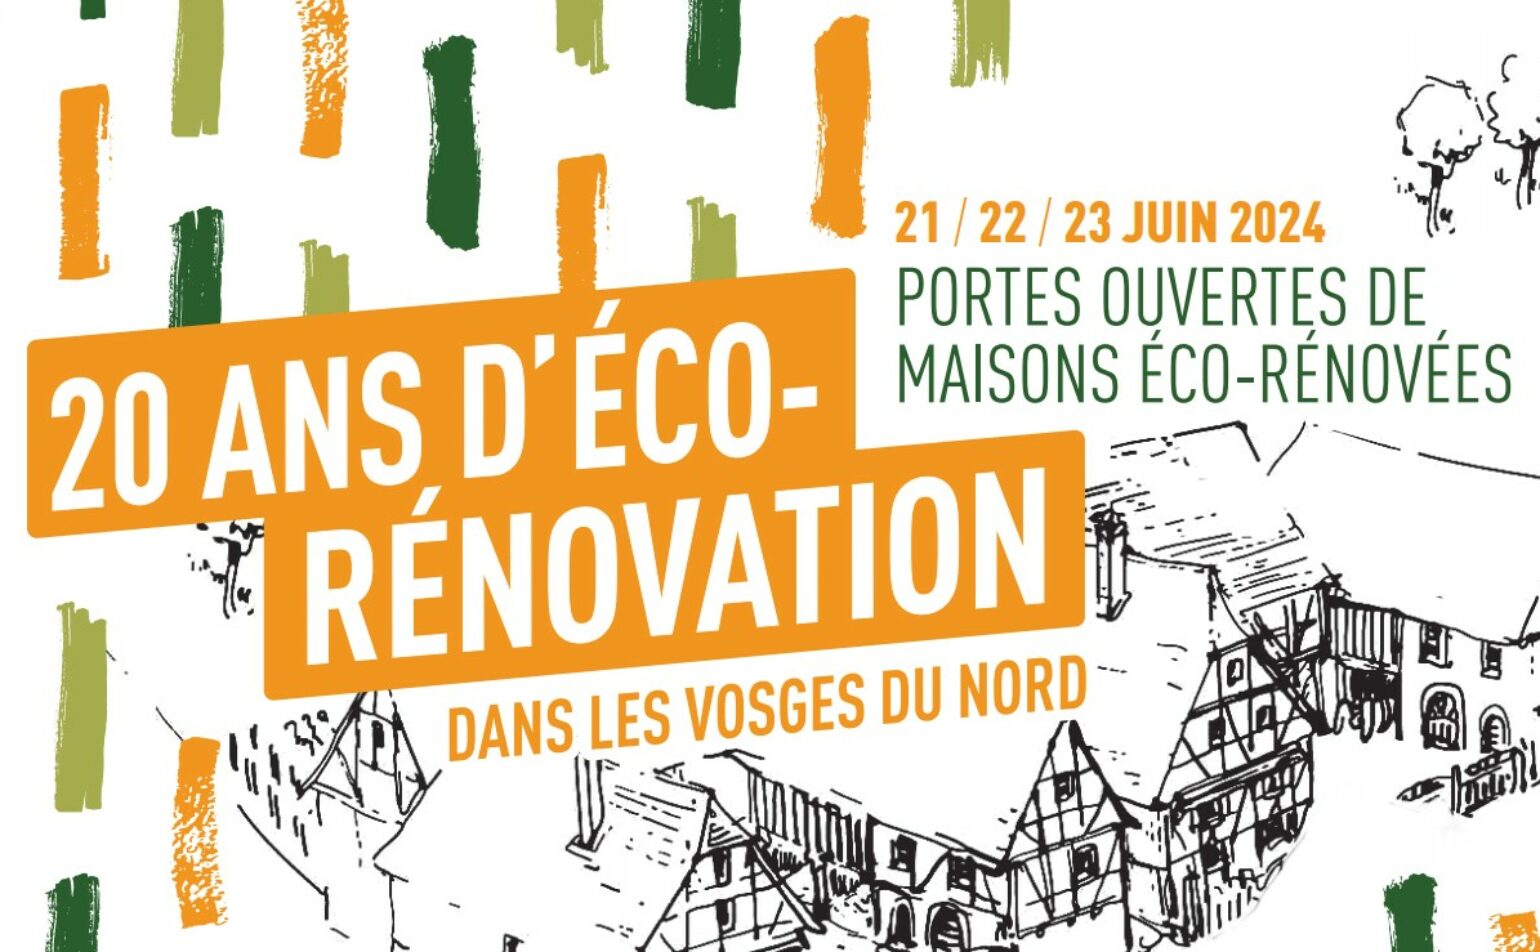 20 ans d’éco-rénovation dans les Vosges du nord